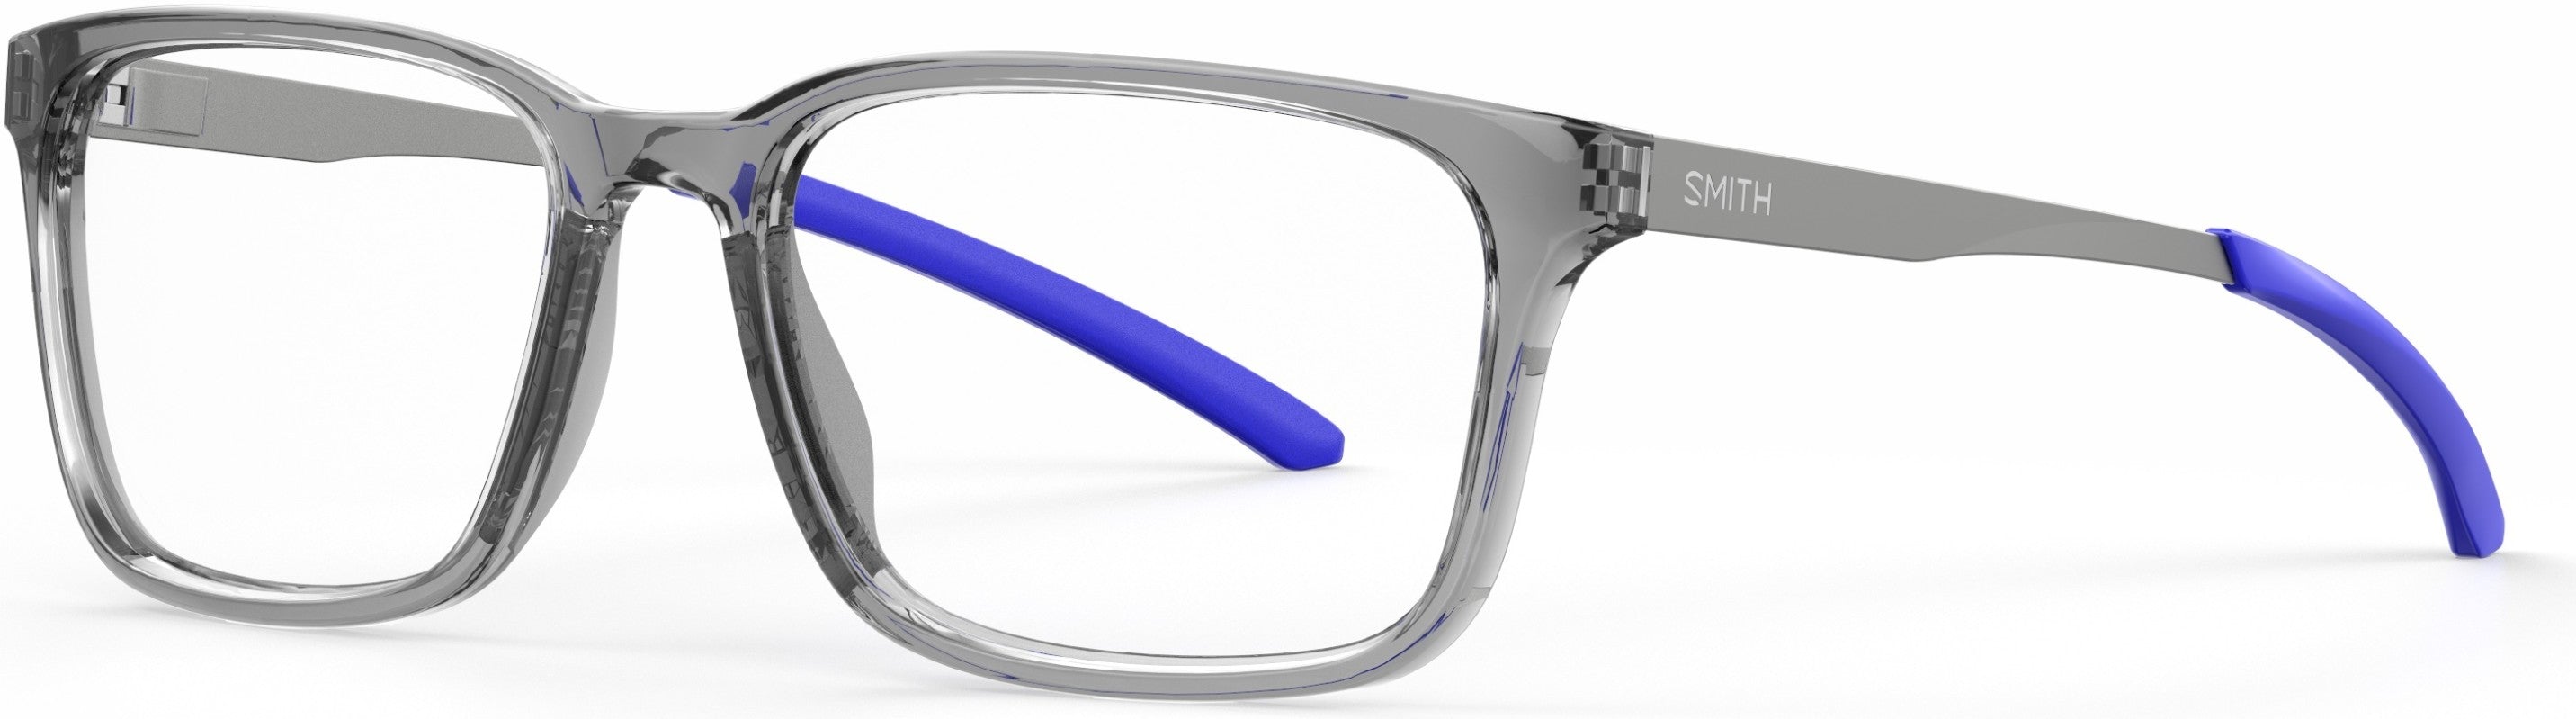 Smith Outsider Mix Rectangular Eyeglasses 009V-009V  Gray Blue (00 Demo Lens)